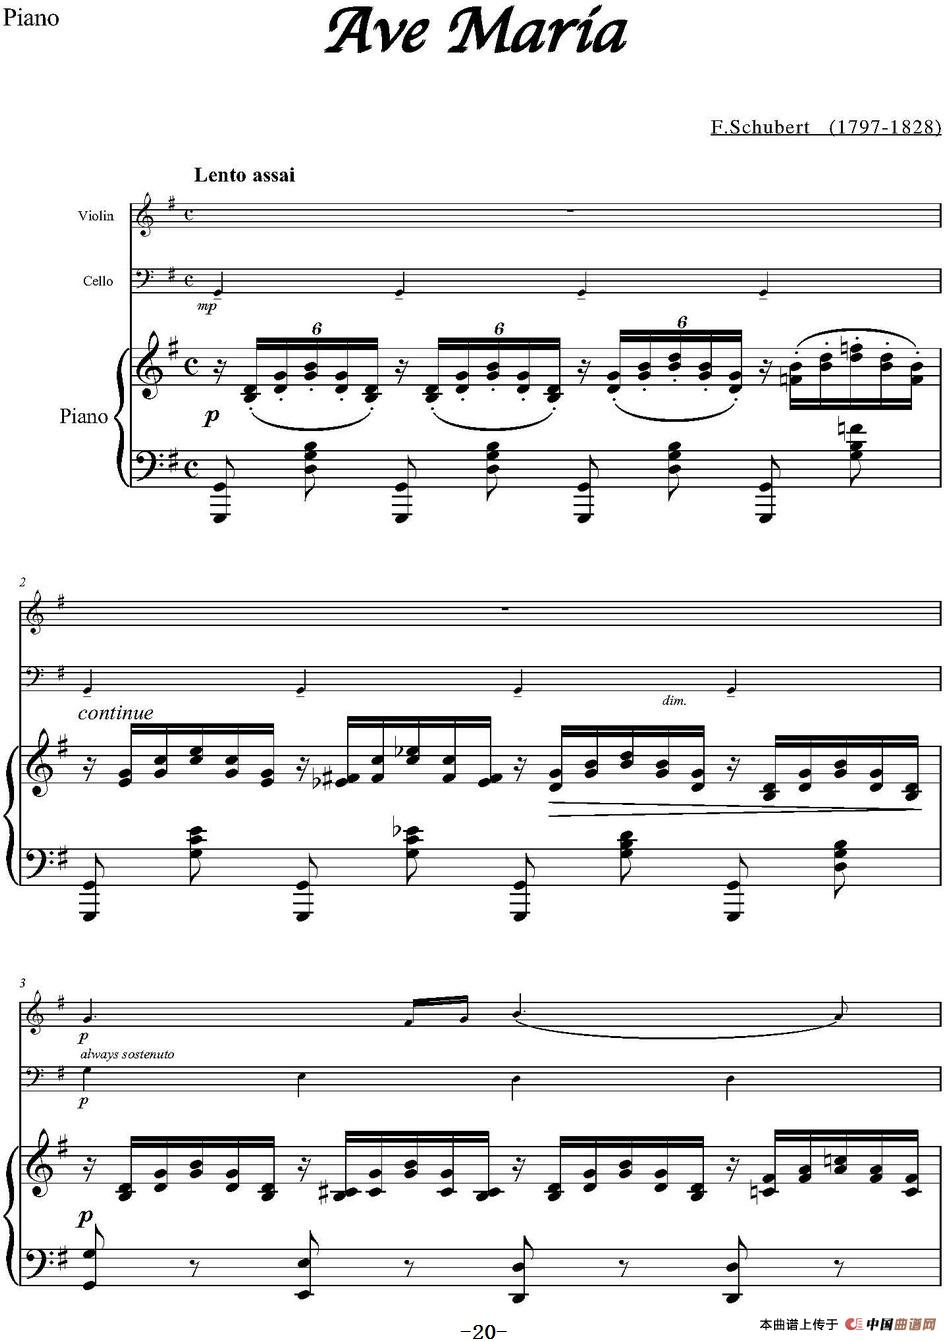 Ave Maria（小提琴+大提琴+钢琴伴奏、E.Schubert作曲